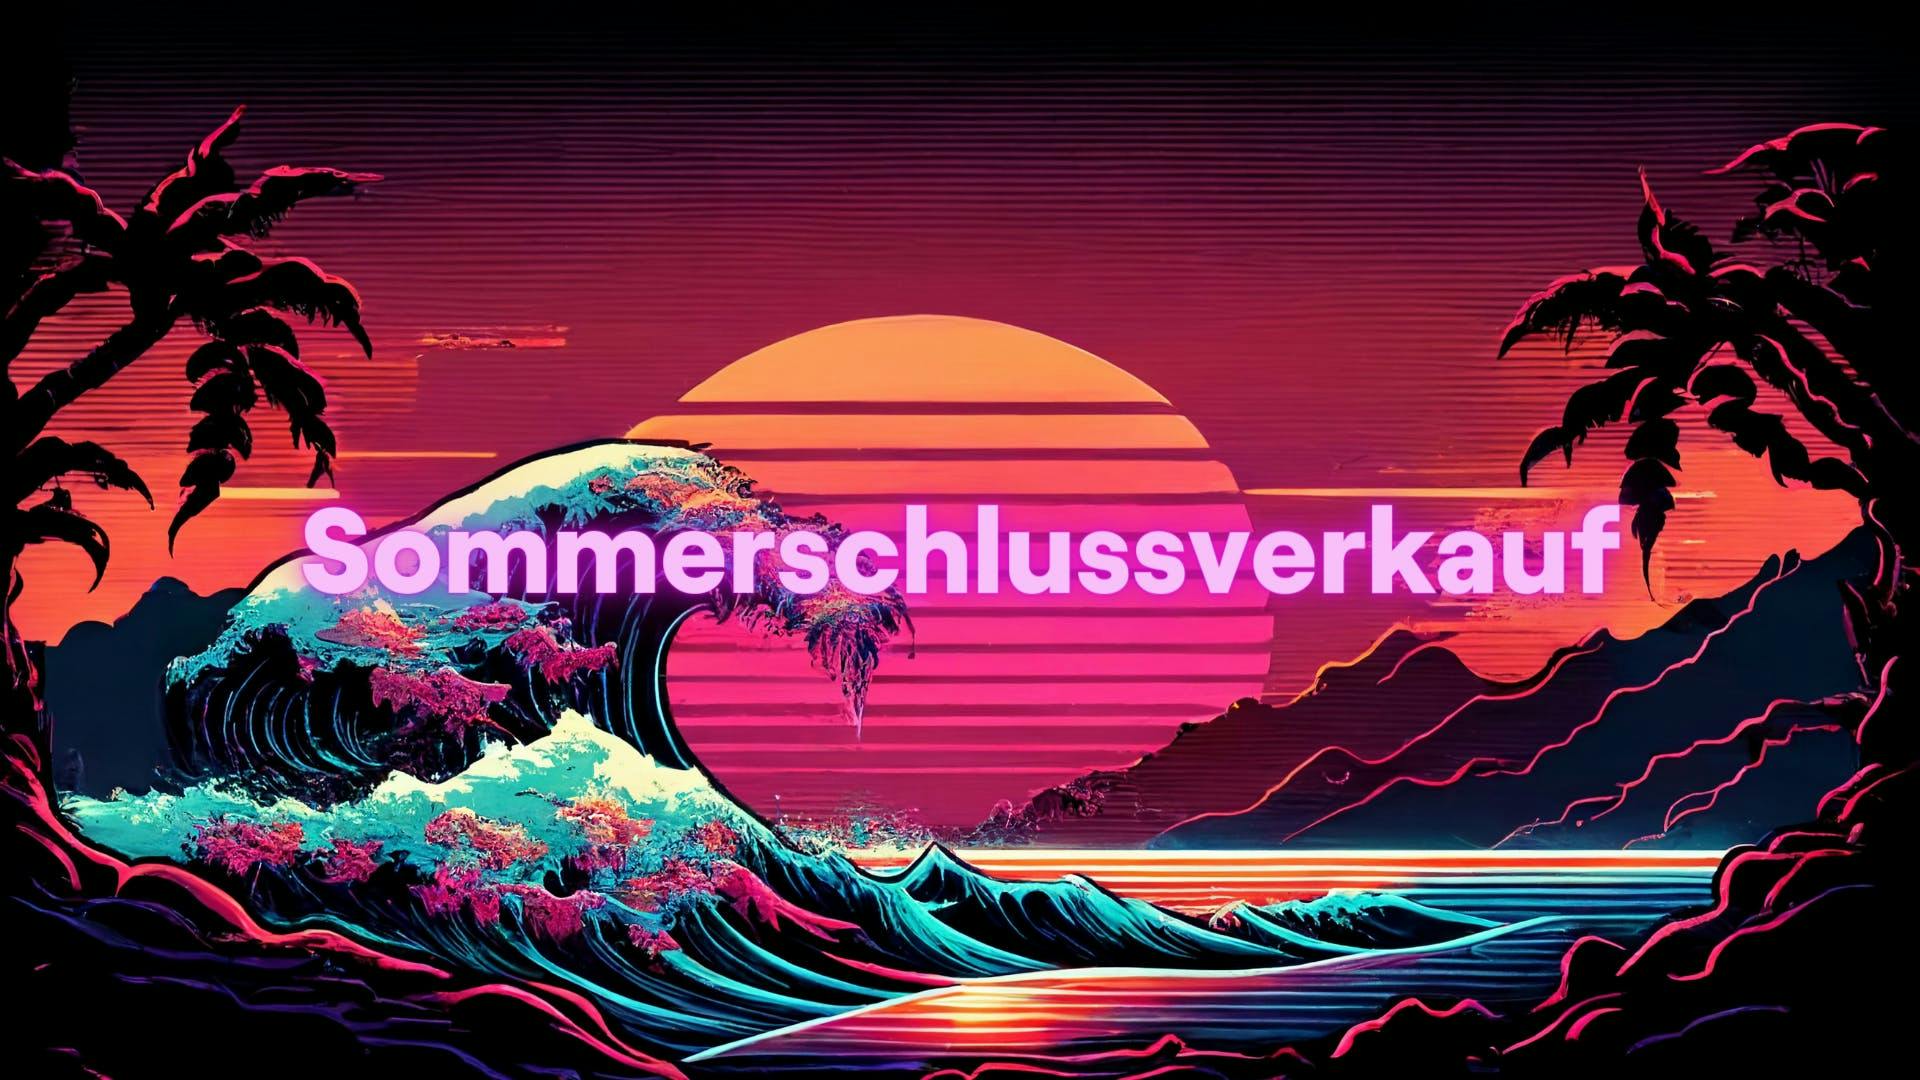 Ein 80er Jahre Style digitaler Sonnenuntergang auf einer Insel dient als Hintergrund für das Wort "Sommerschlussverkauf"